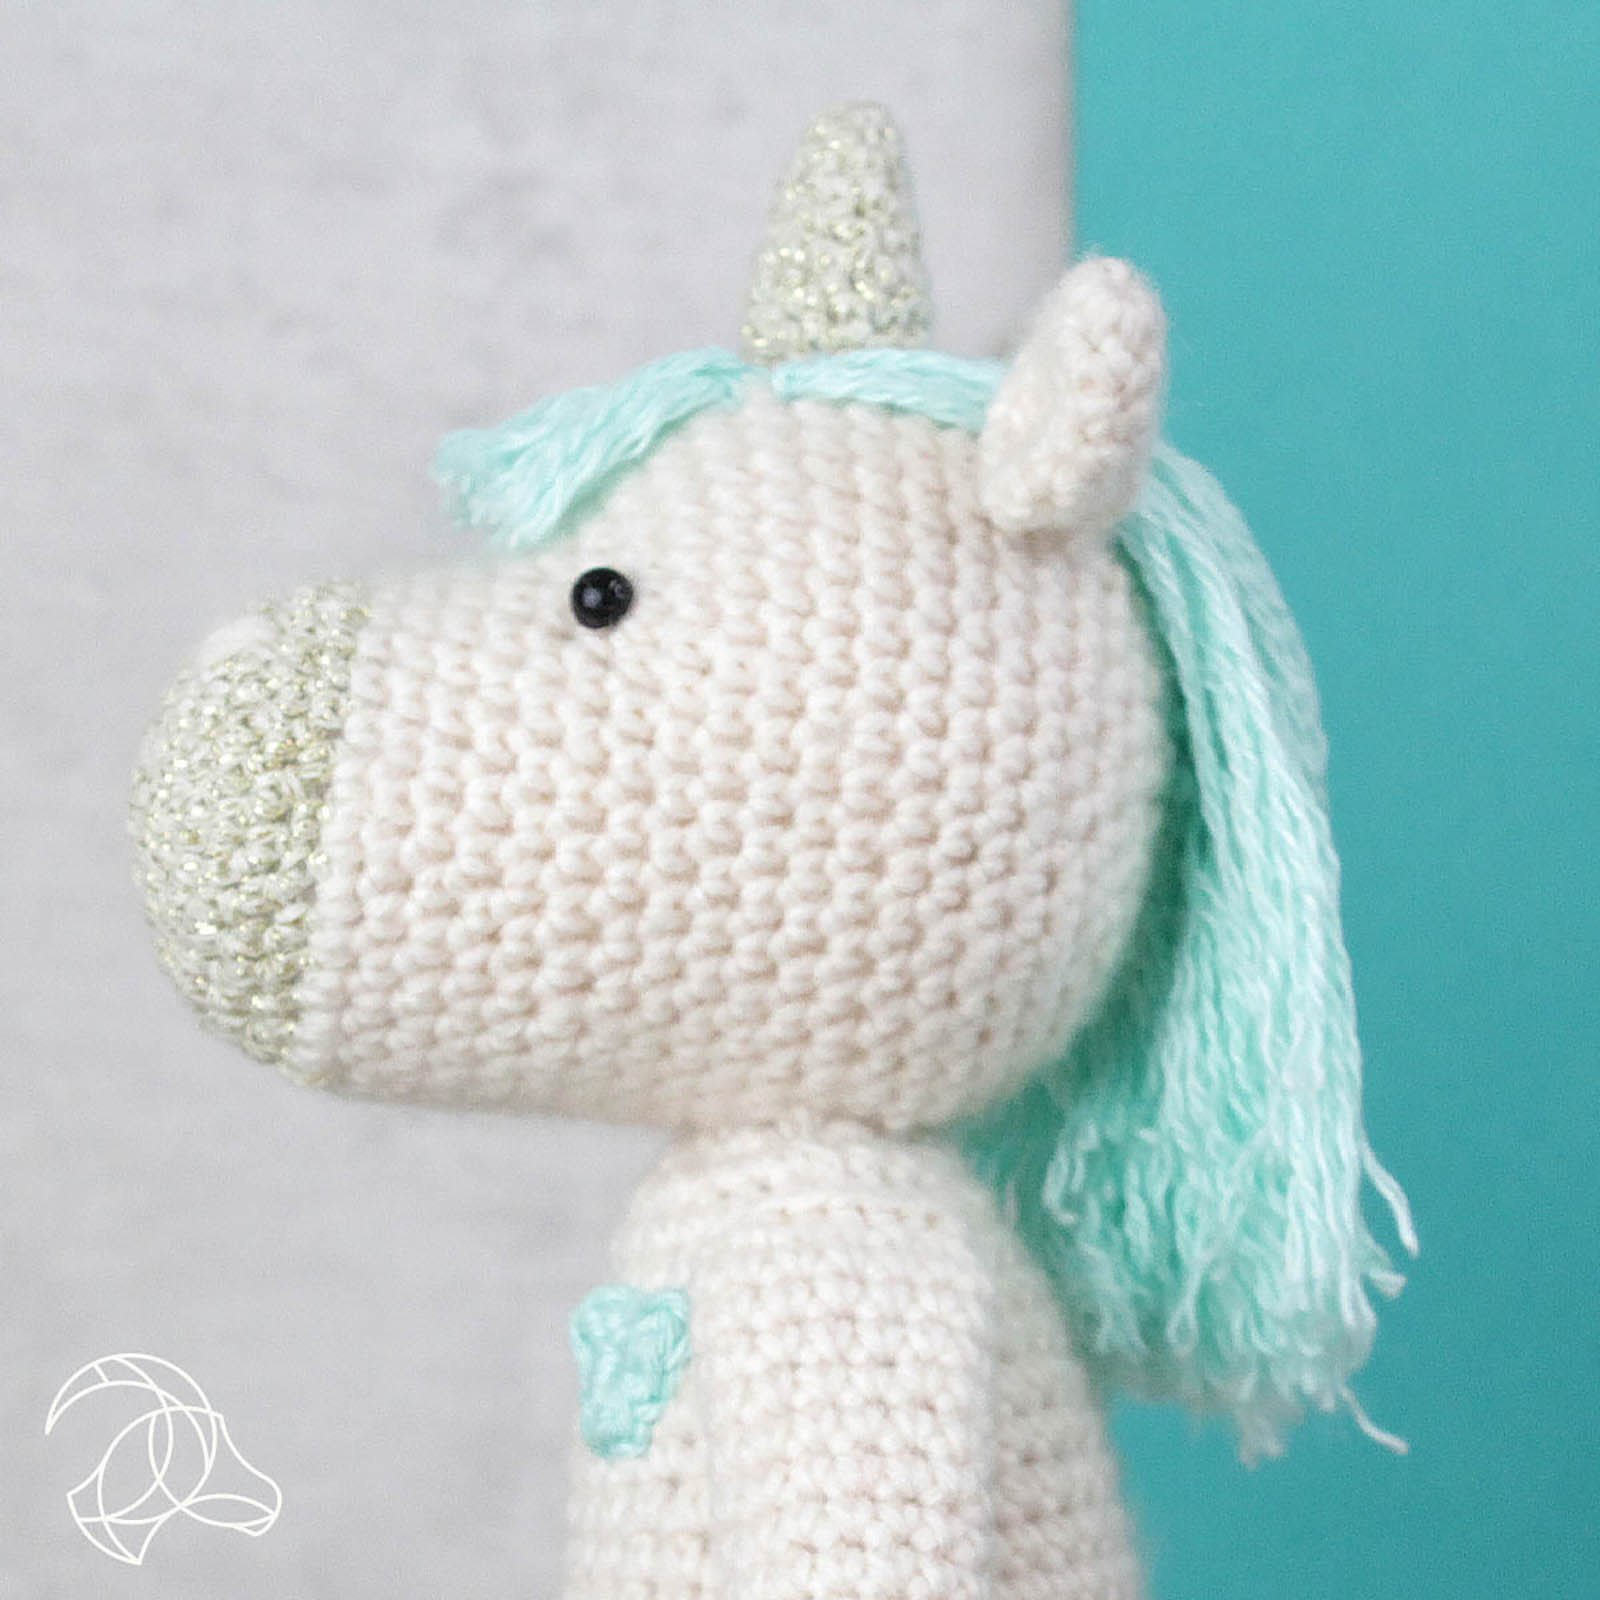 DIY Crochet Kit - Unicorn - from Gift Republic